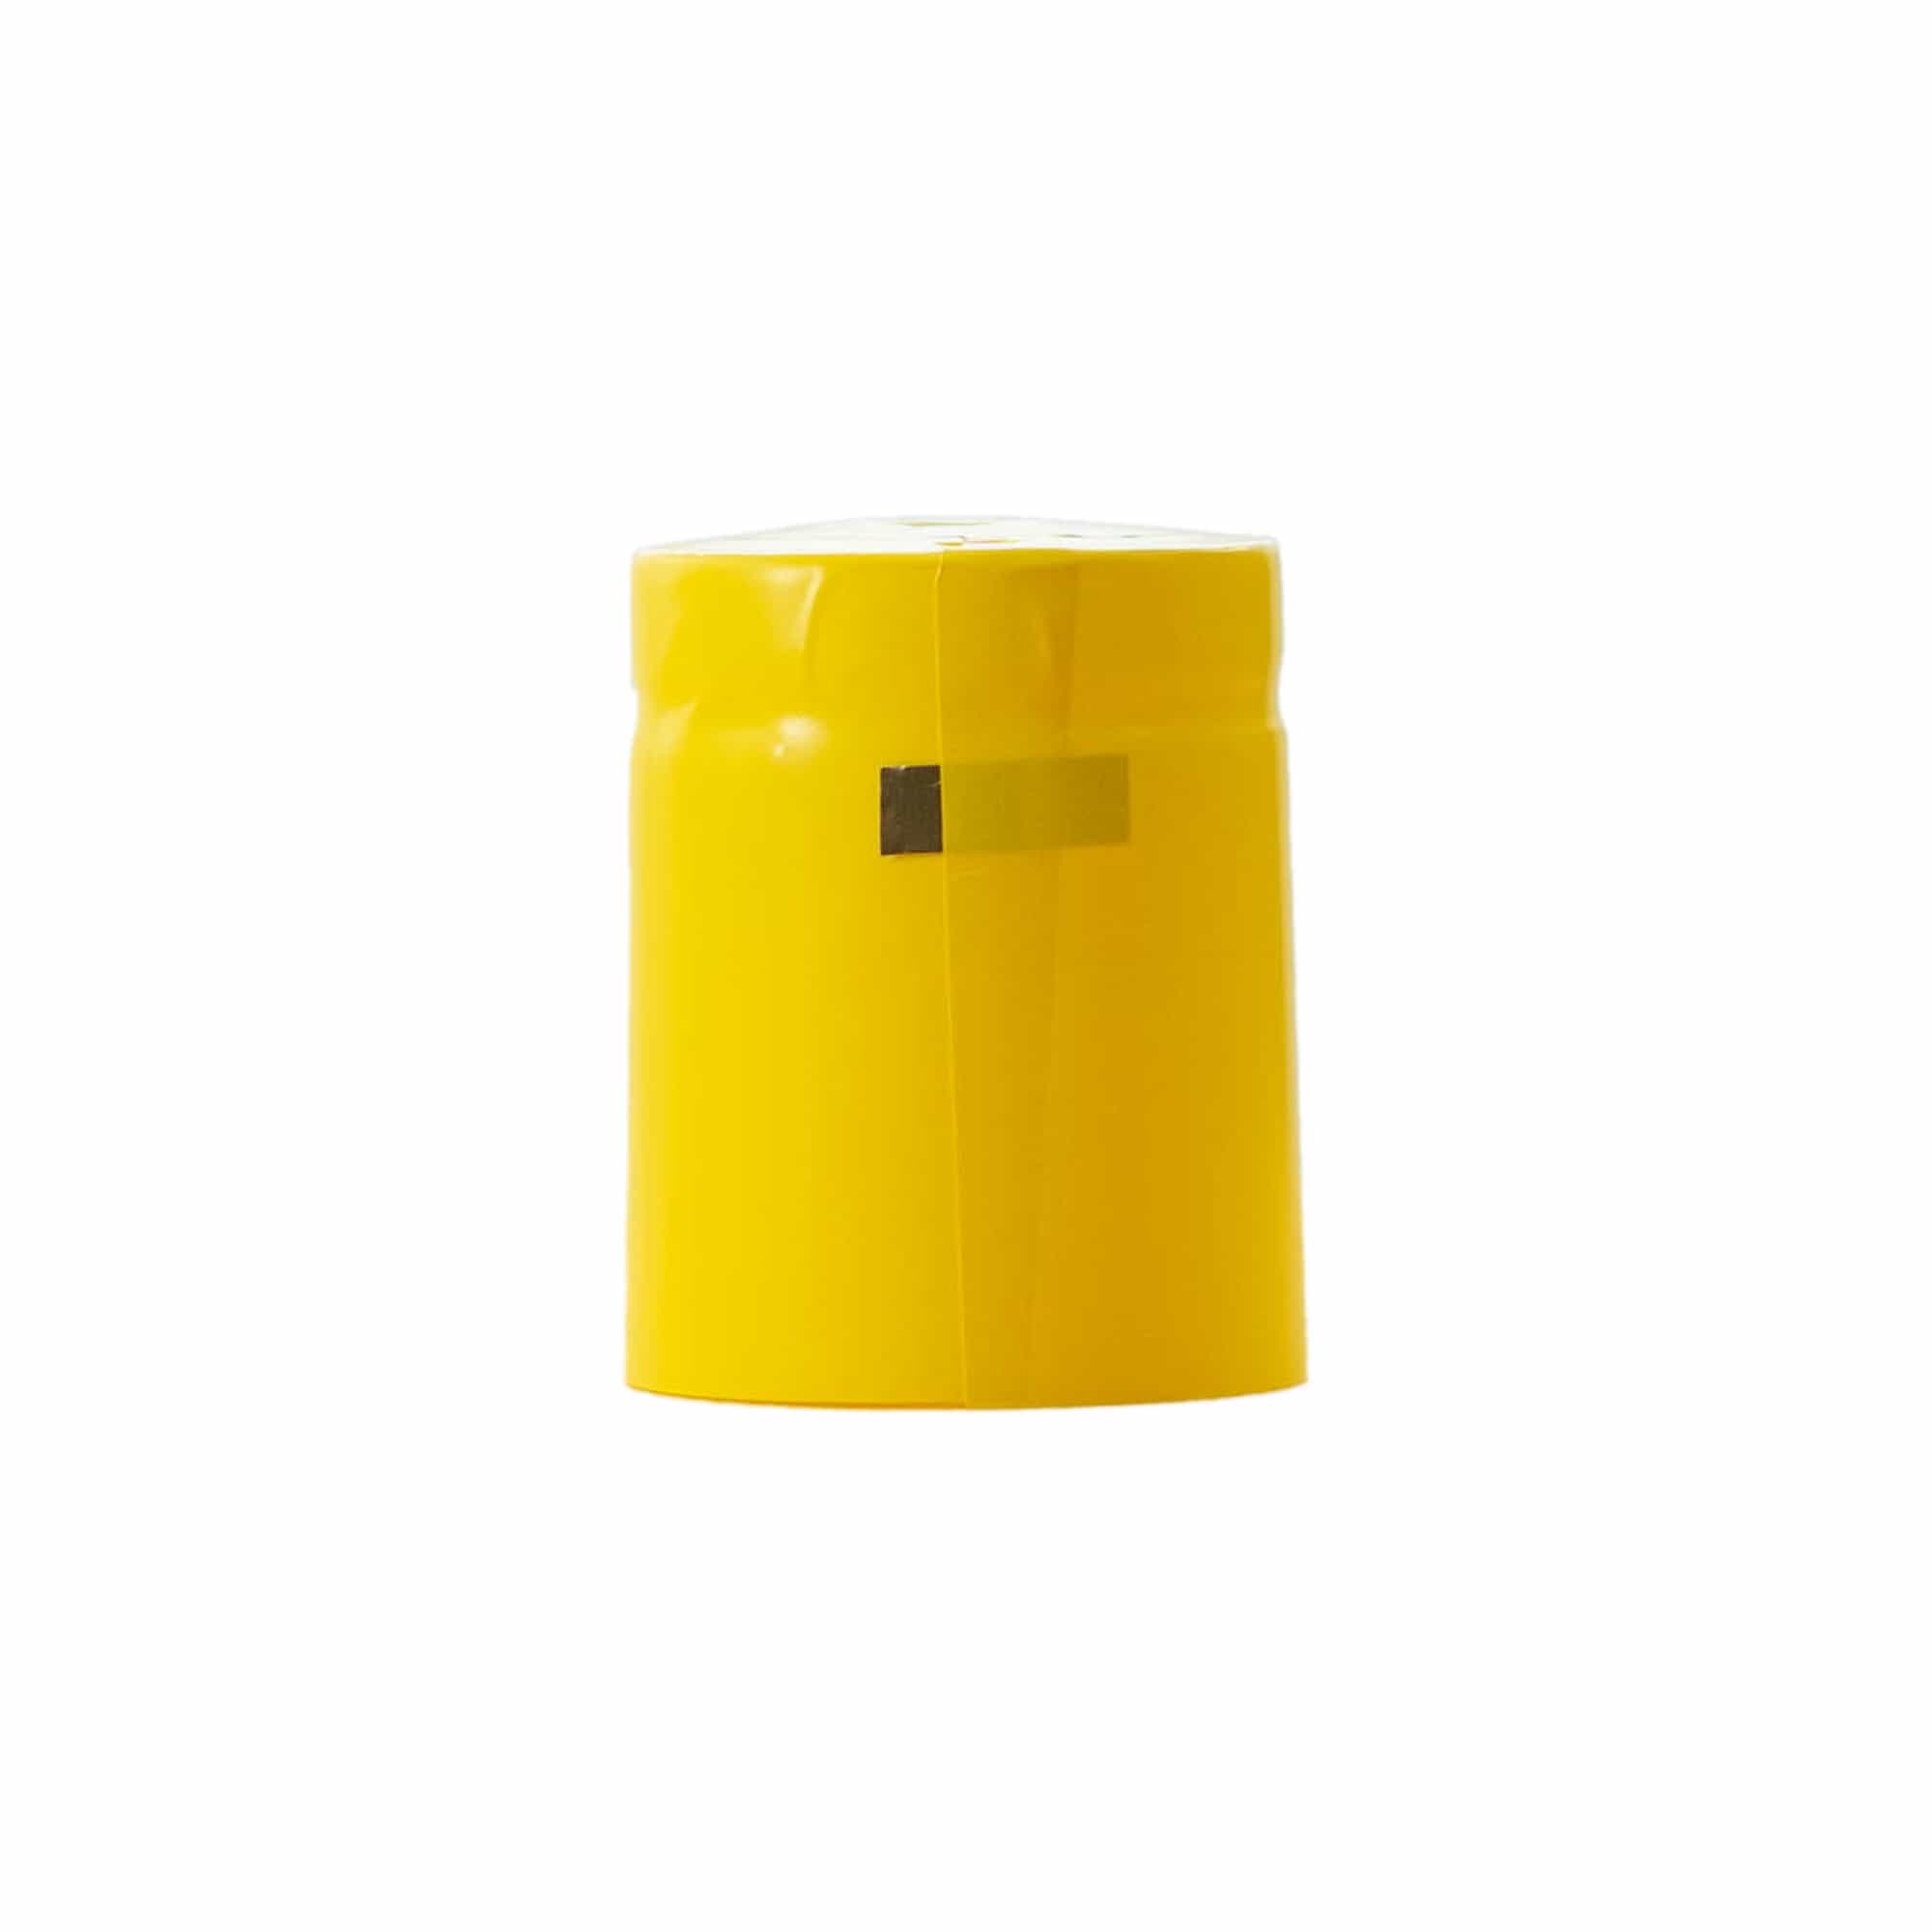 Cápsula termoencogible 32x41, plástico de PVC, amarillo